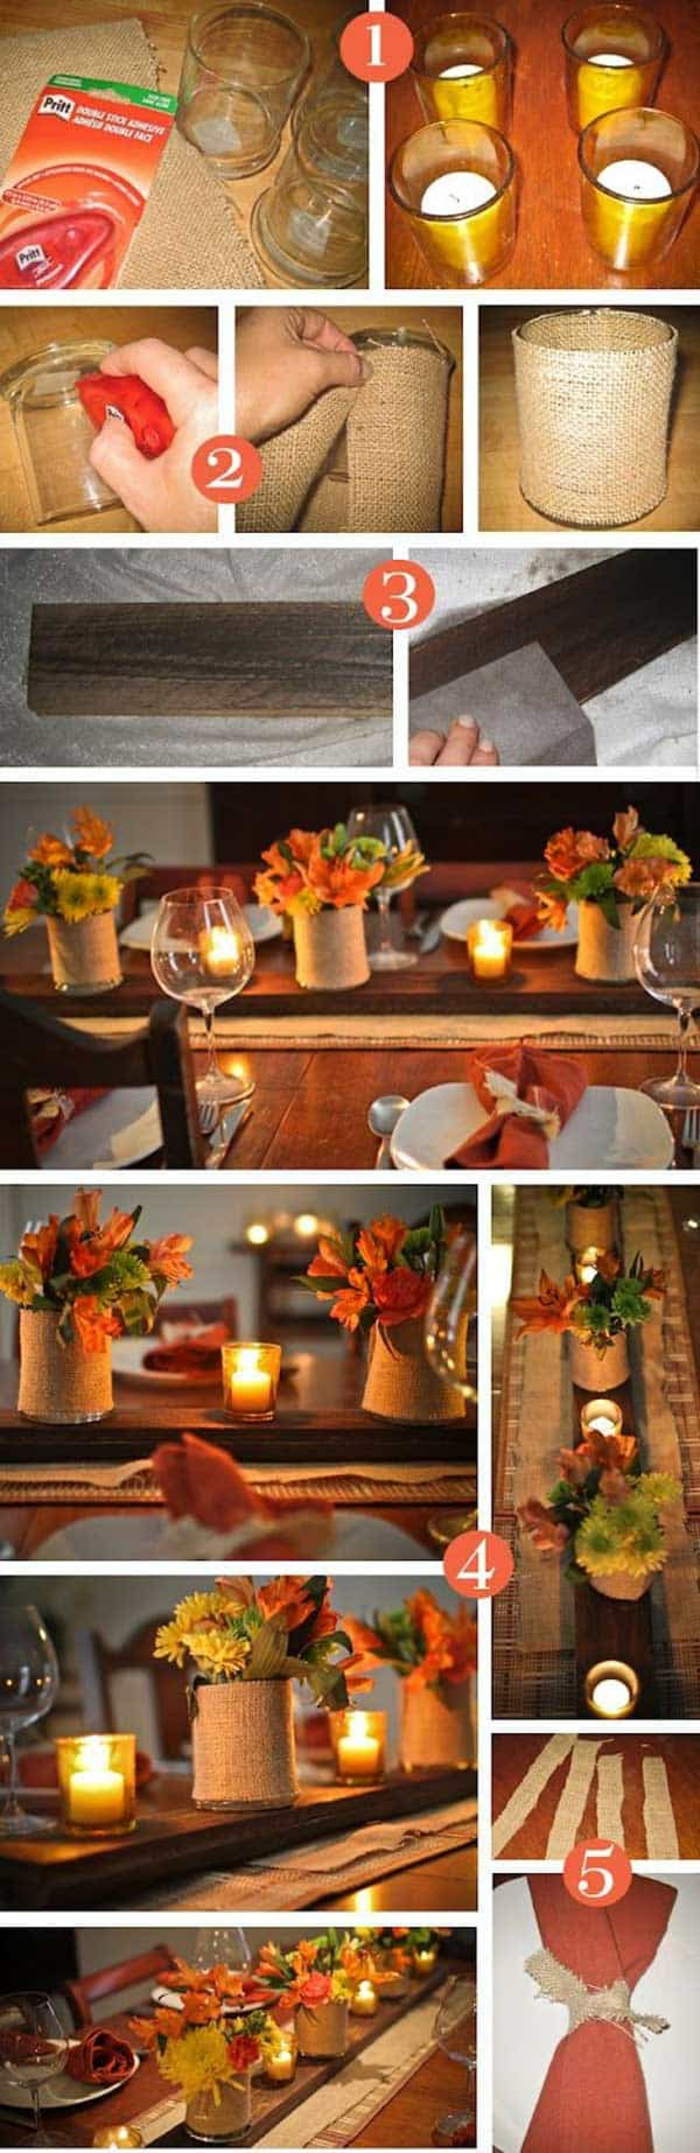 06 pas a pas deco d automne idée deco table automne a faire soi meme vase avec fleurs d automne et bougies décorées